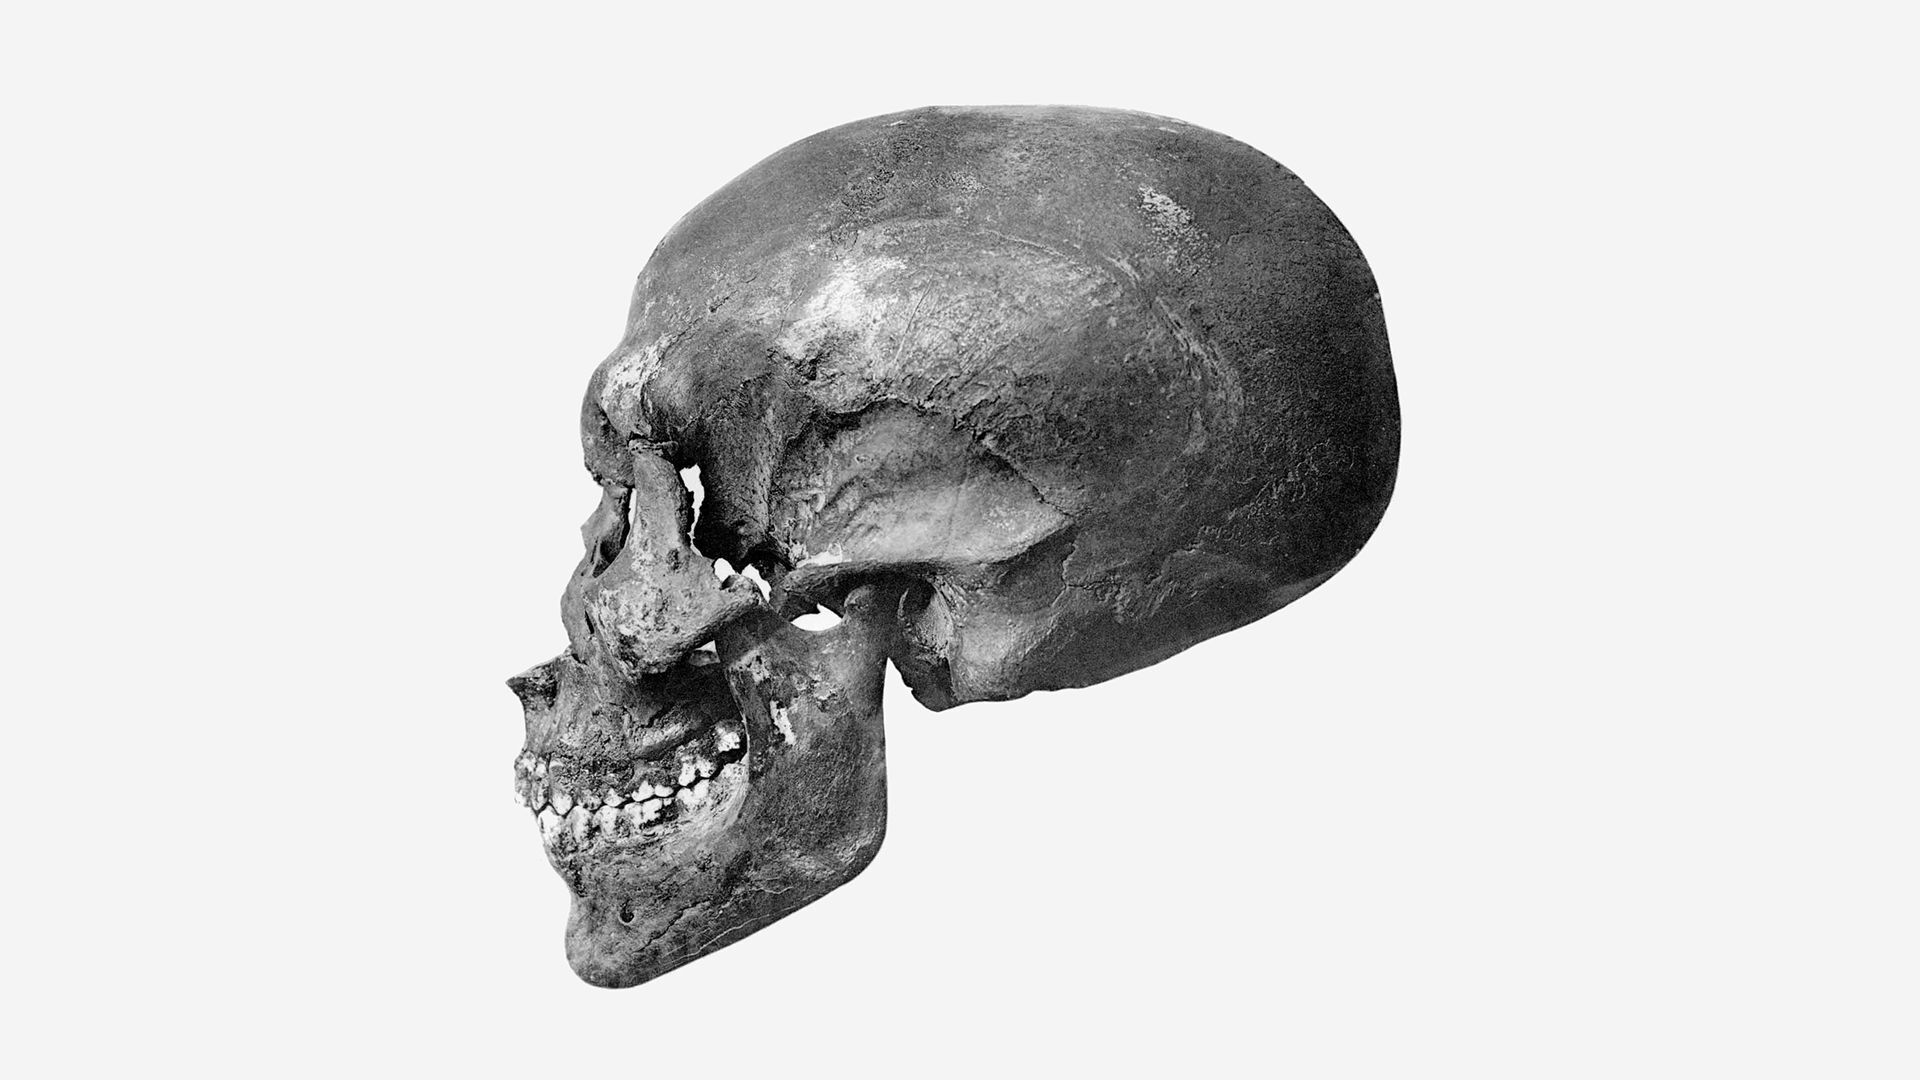 Rosto de pai do rei Tutancâmon é revelado em reconstrução facial 3D de artista brasileiro (FOTOS) - Sputnik Brasil, 1920, 26.03.2021